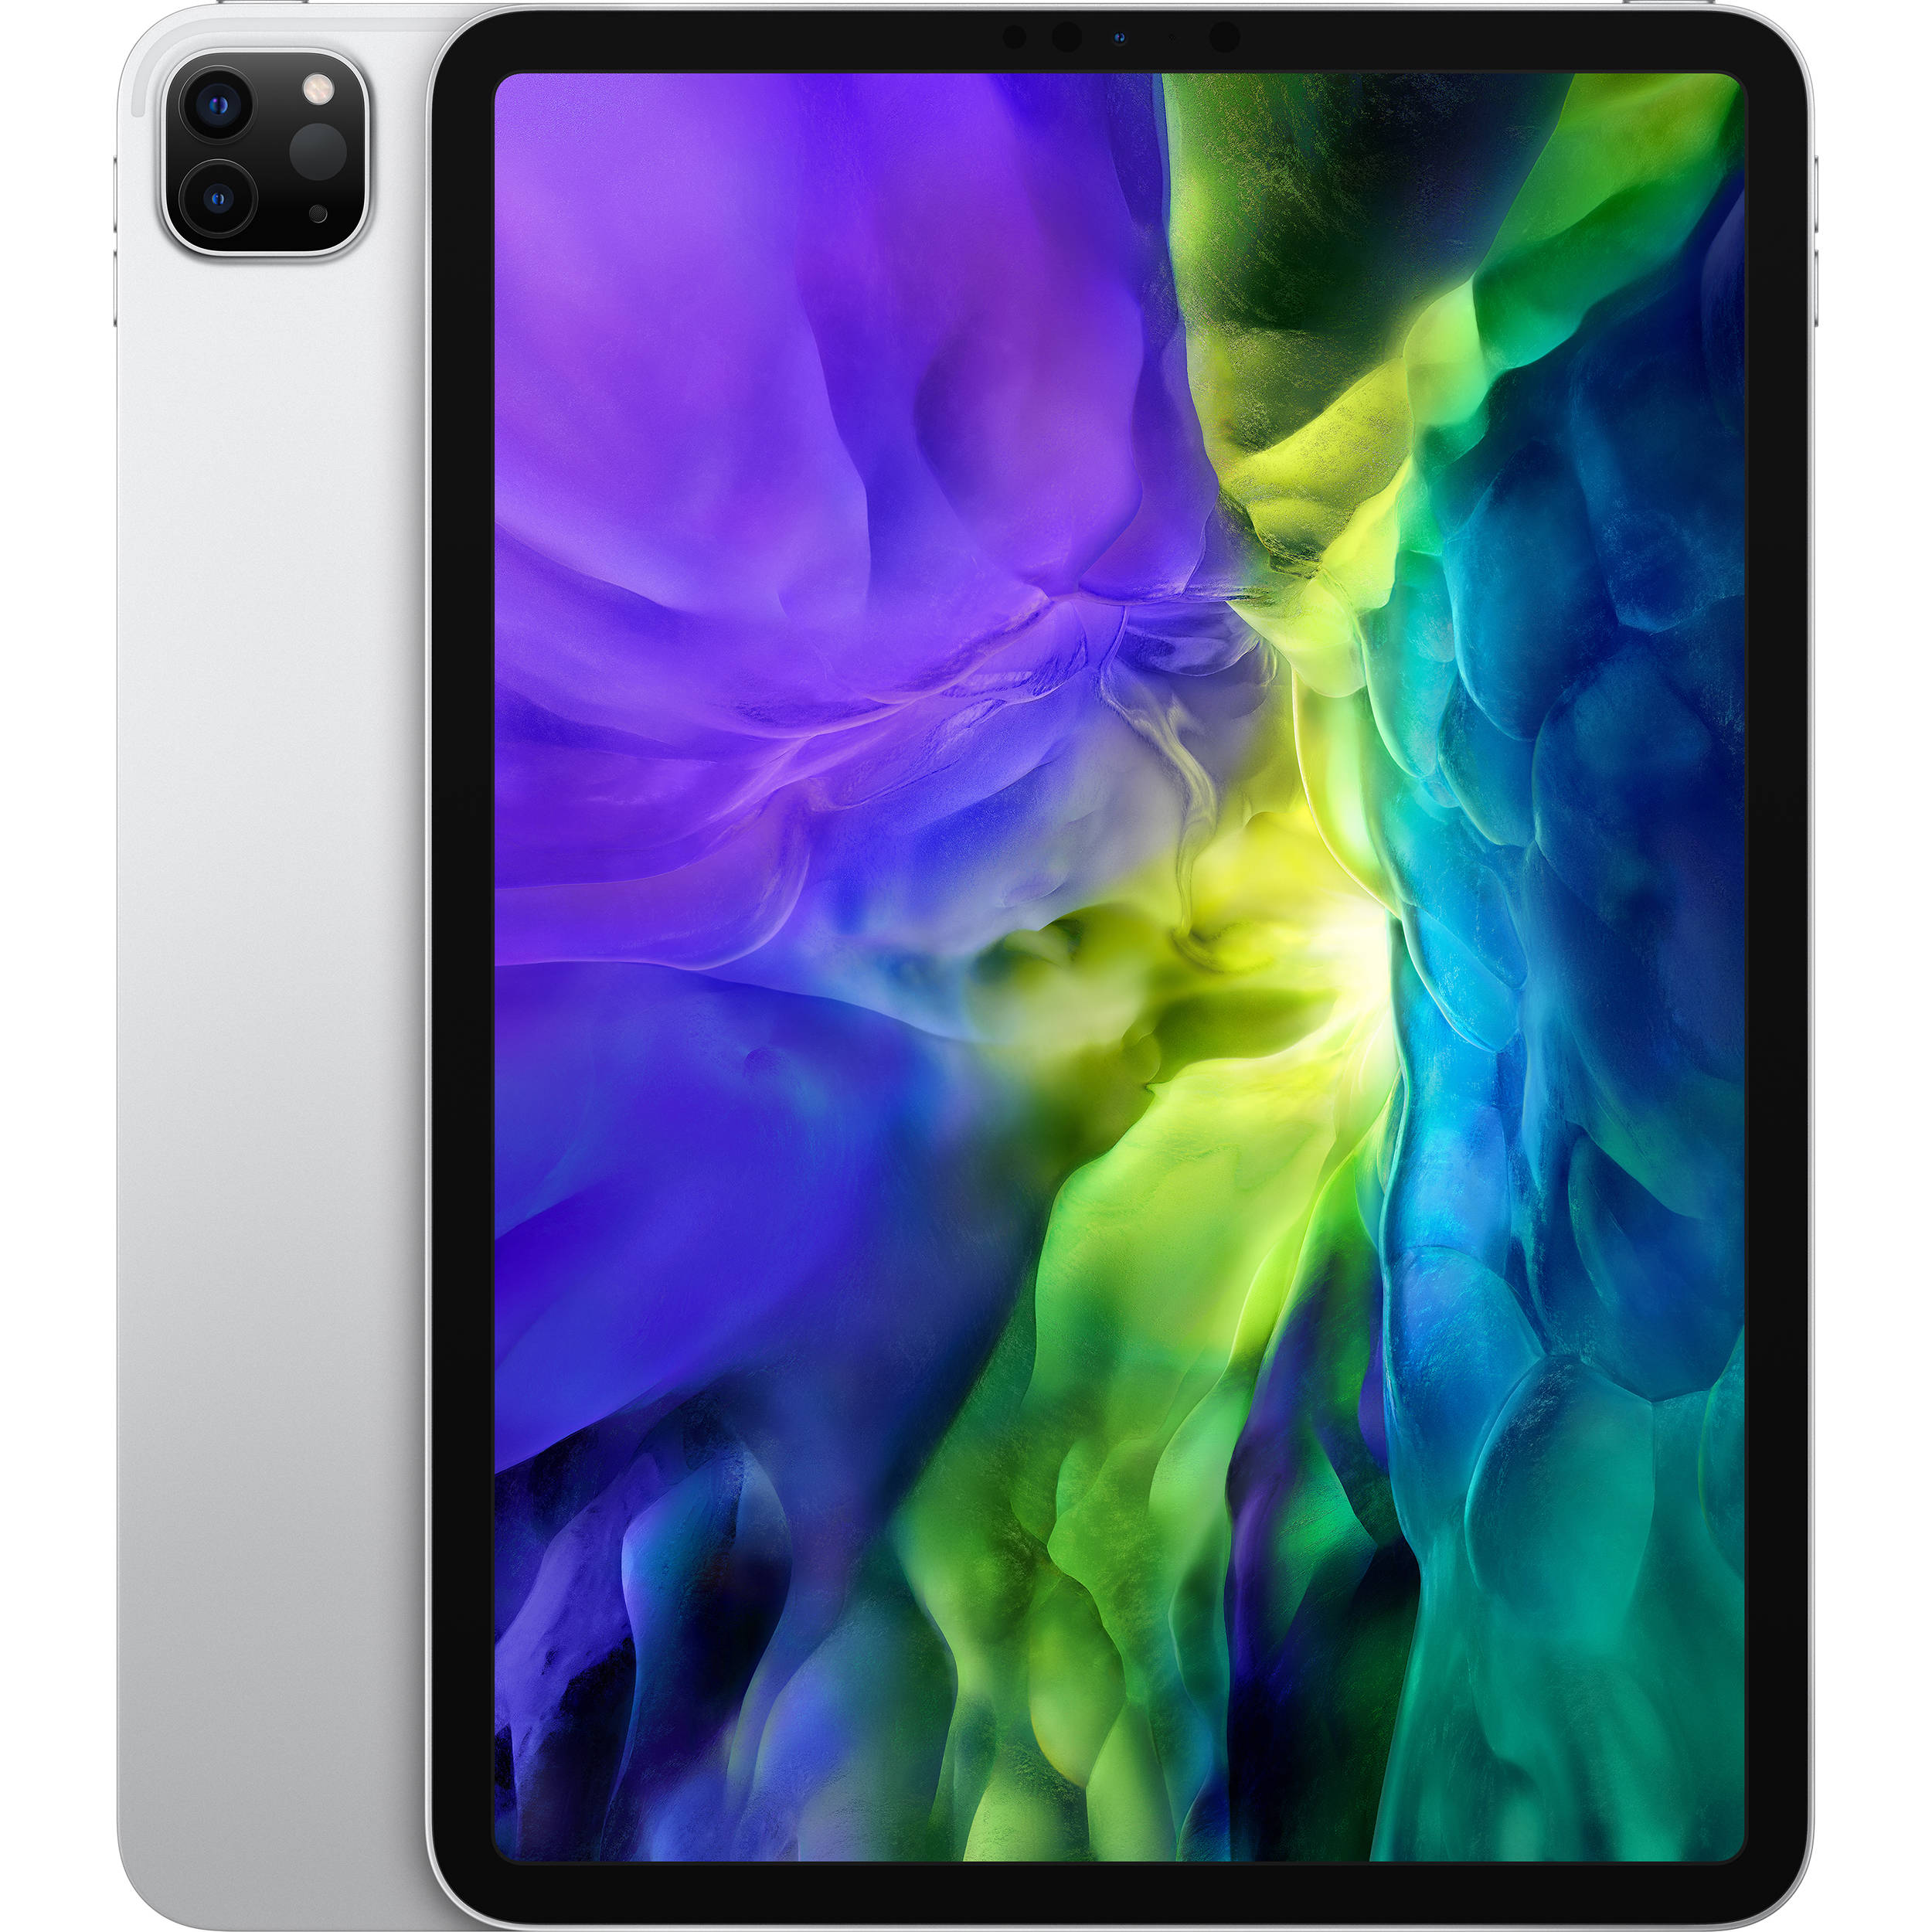 Apple iPad Pro 11 (2020) 256GB 6GB RAM Apple A12Z Bionic Smart Tablet